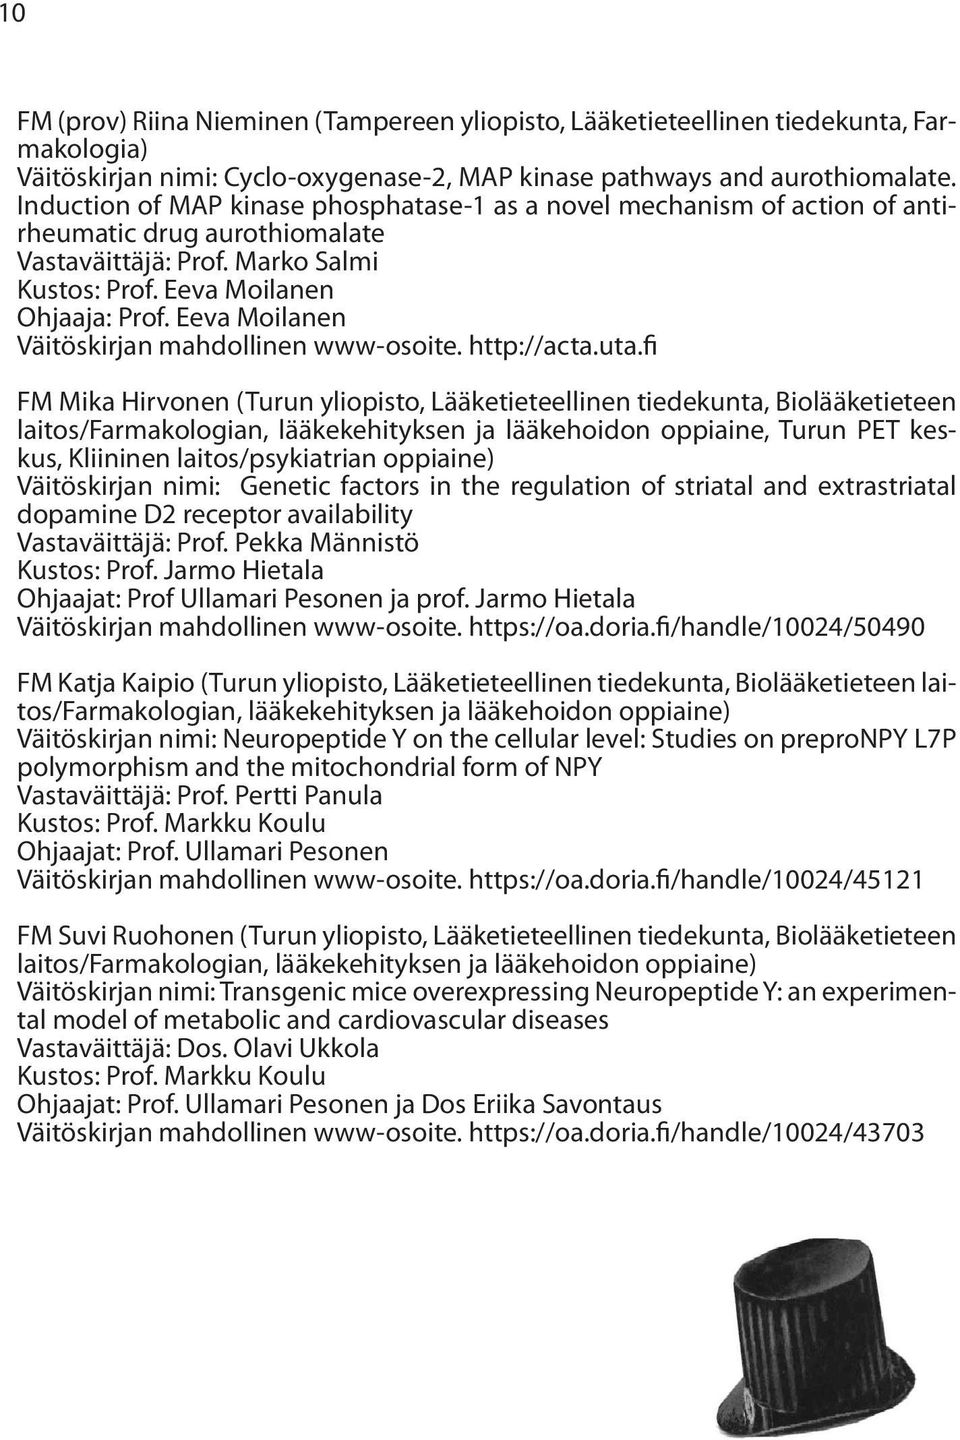 Eeva Moilanen Väitöskirjan mahdollinen www-osoite. http://acta.uta.